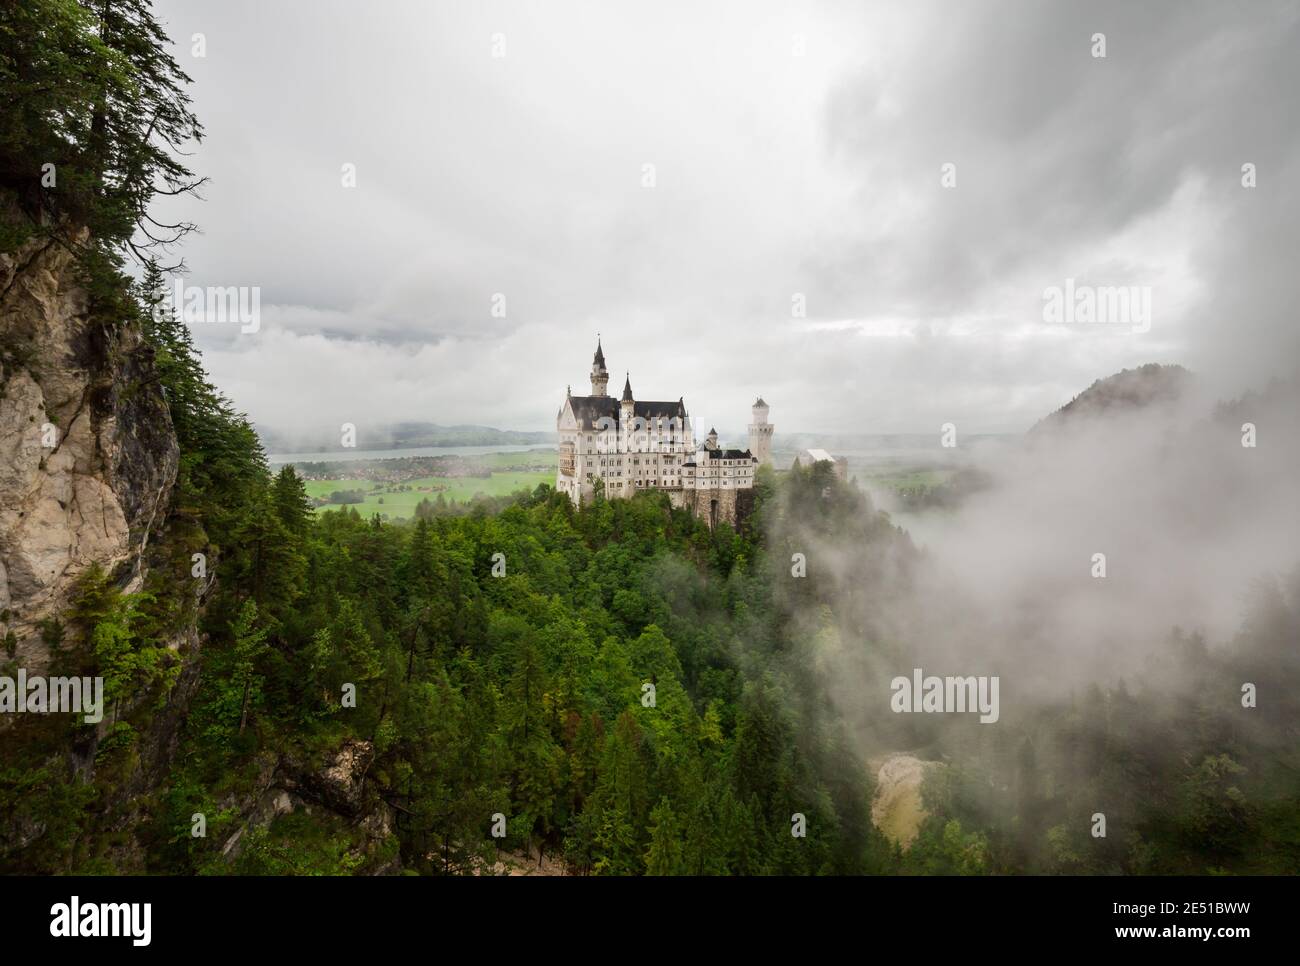 Weitwinkelansicht einer deutschen Landschaft mit einem alten Schloss umgeben von niedrigen Wolken, gegen einen dunklen bewölkten Himmel Stockfoto